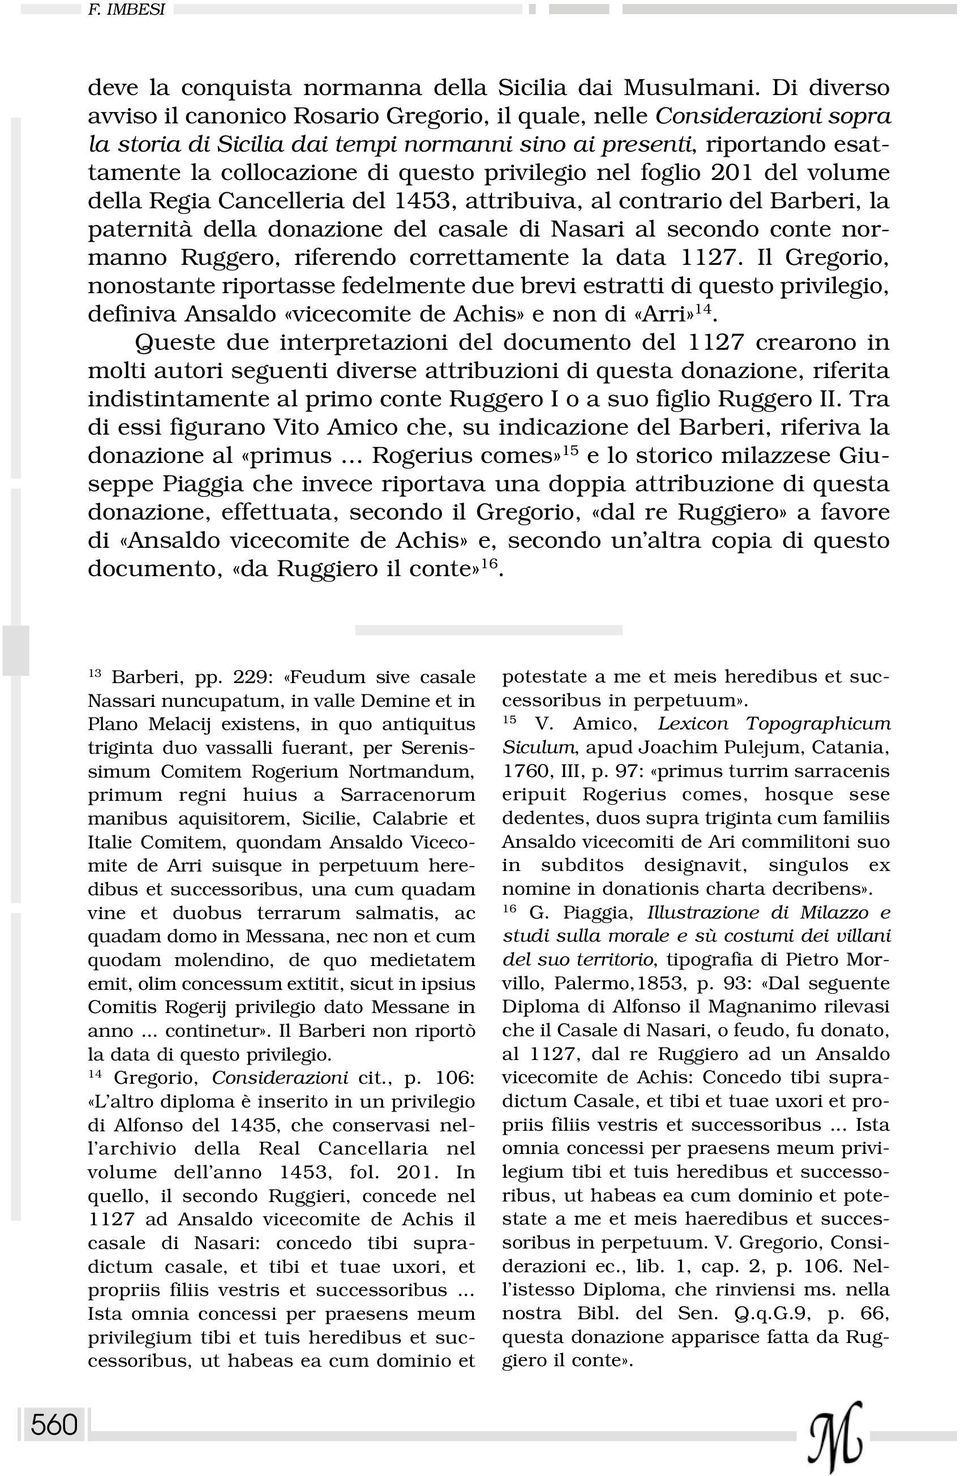 privilegio nel foglio 201 del volume della Regia Cancelleria del 1453, attribuiva, al contrario del Barberi, la paternità della donazione del casale di Nasari al secondo conte normanno Ruggero,